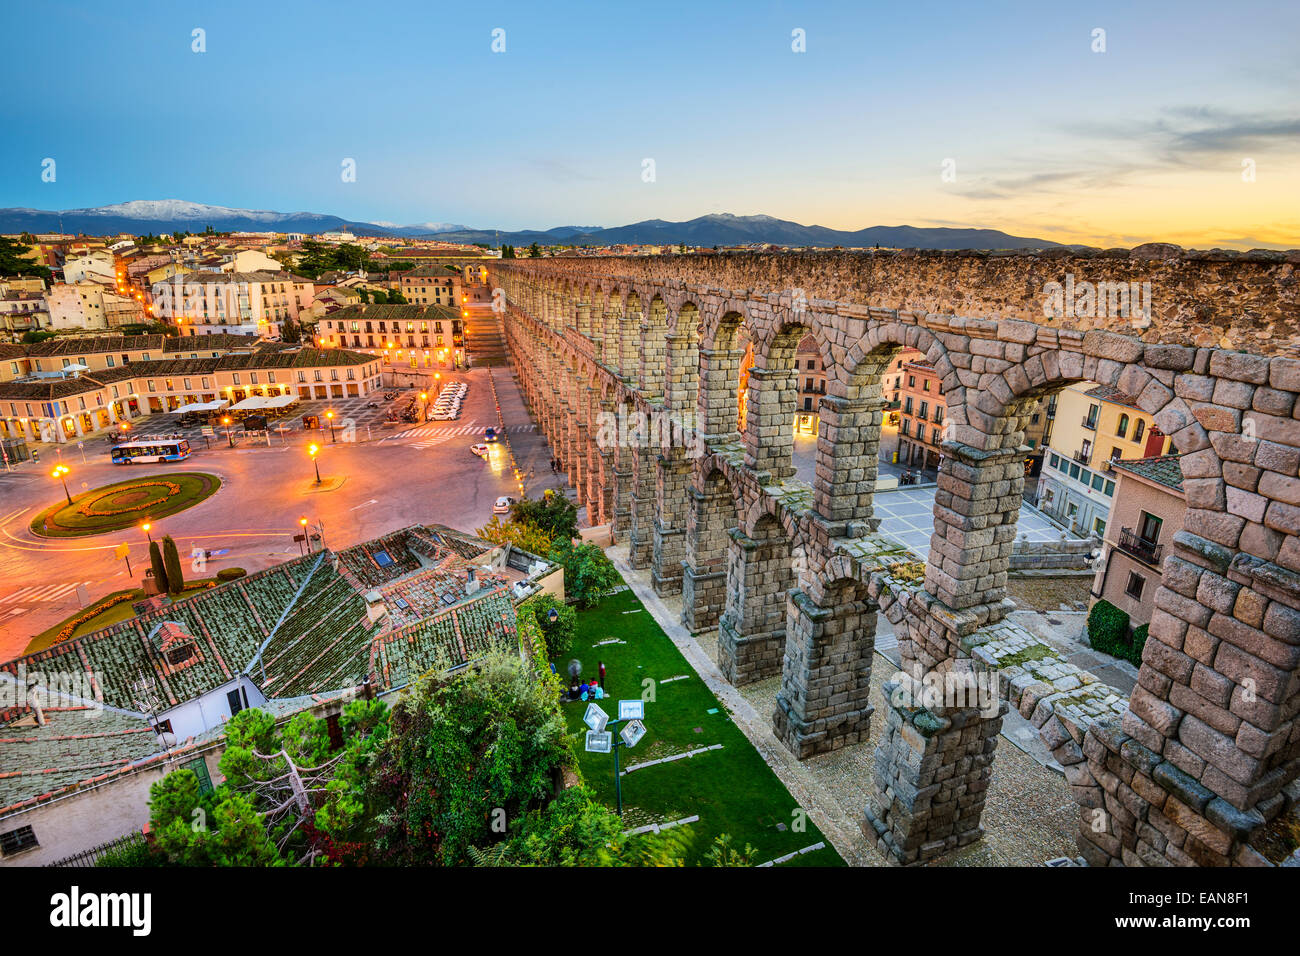 Segovia, España en el antiguo acueducto romano. Foto de stock